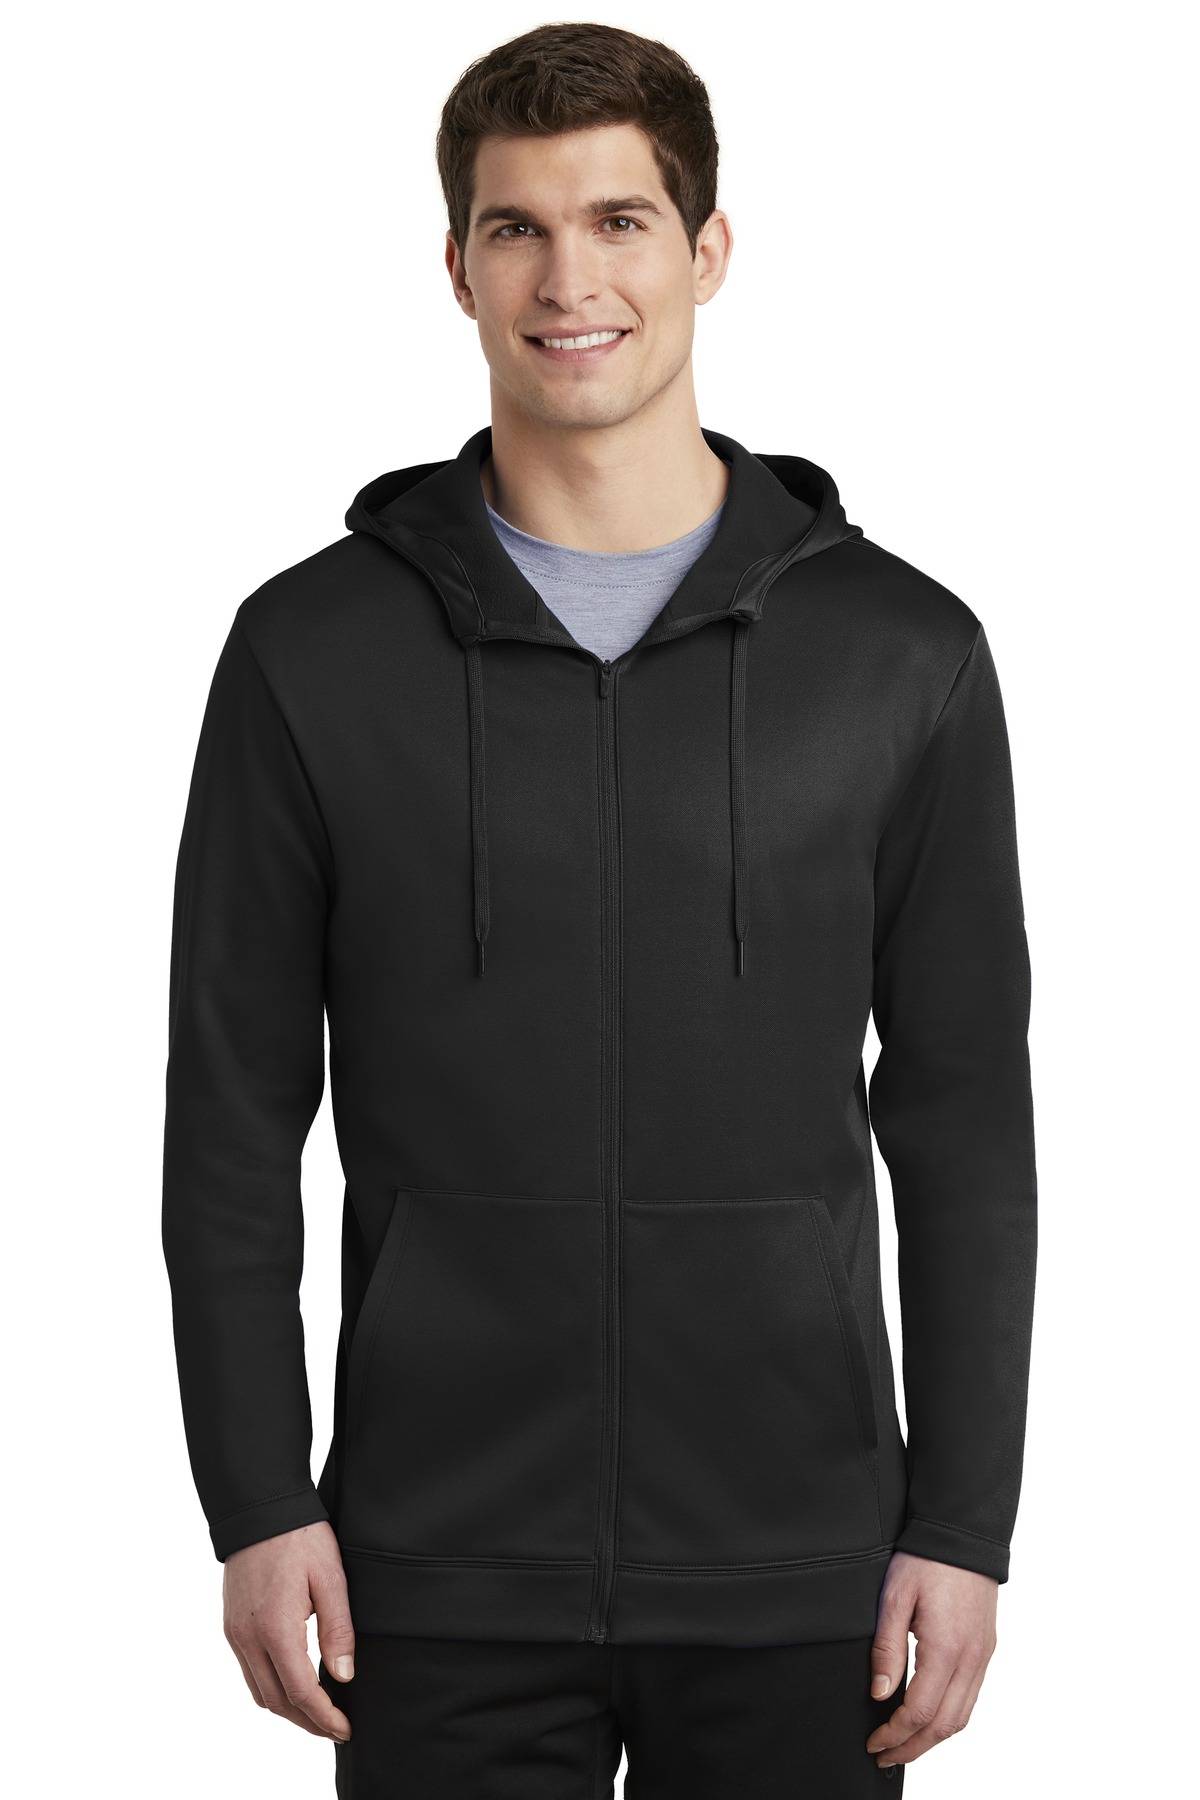 Nike Hospitality Sweatshirts & Fleece Therma-FIT Full-Zip Fleece Hoodie.-Nike